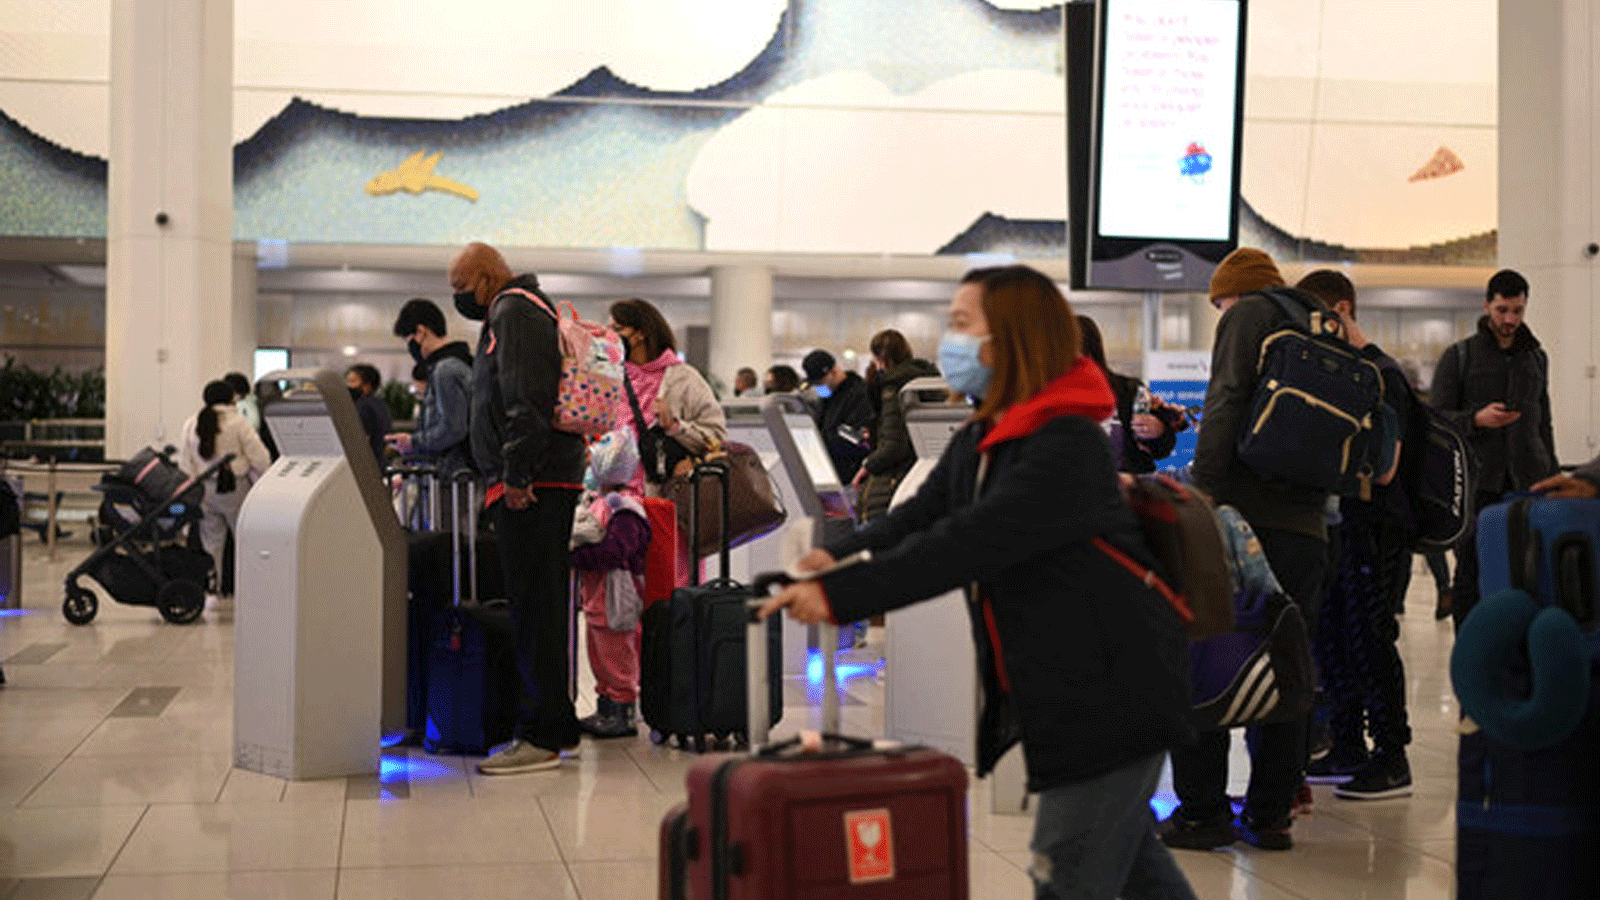  المسافرون يرتدون أقنعة في مطار LaGuardia الدولي في 30 تشرين الثاني/ نوفمبر 2021 في نيويورك مع تزايد القلق في جميع أنحاء العالم بشأن Omicron، أحدث متغير لـ Covid-19.